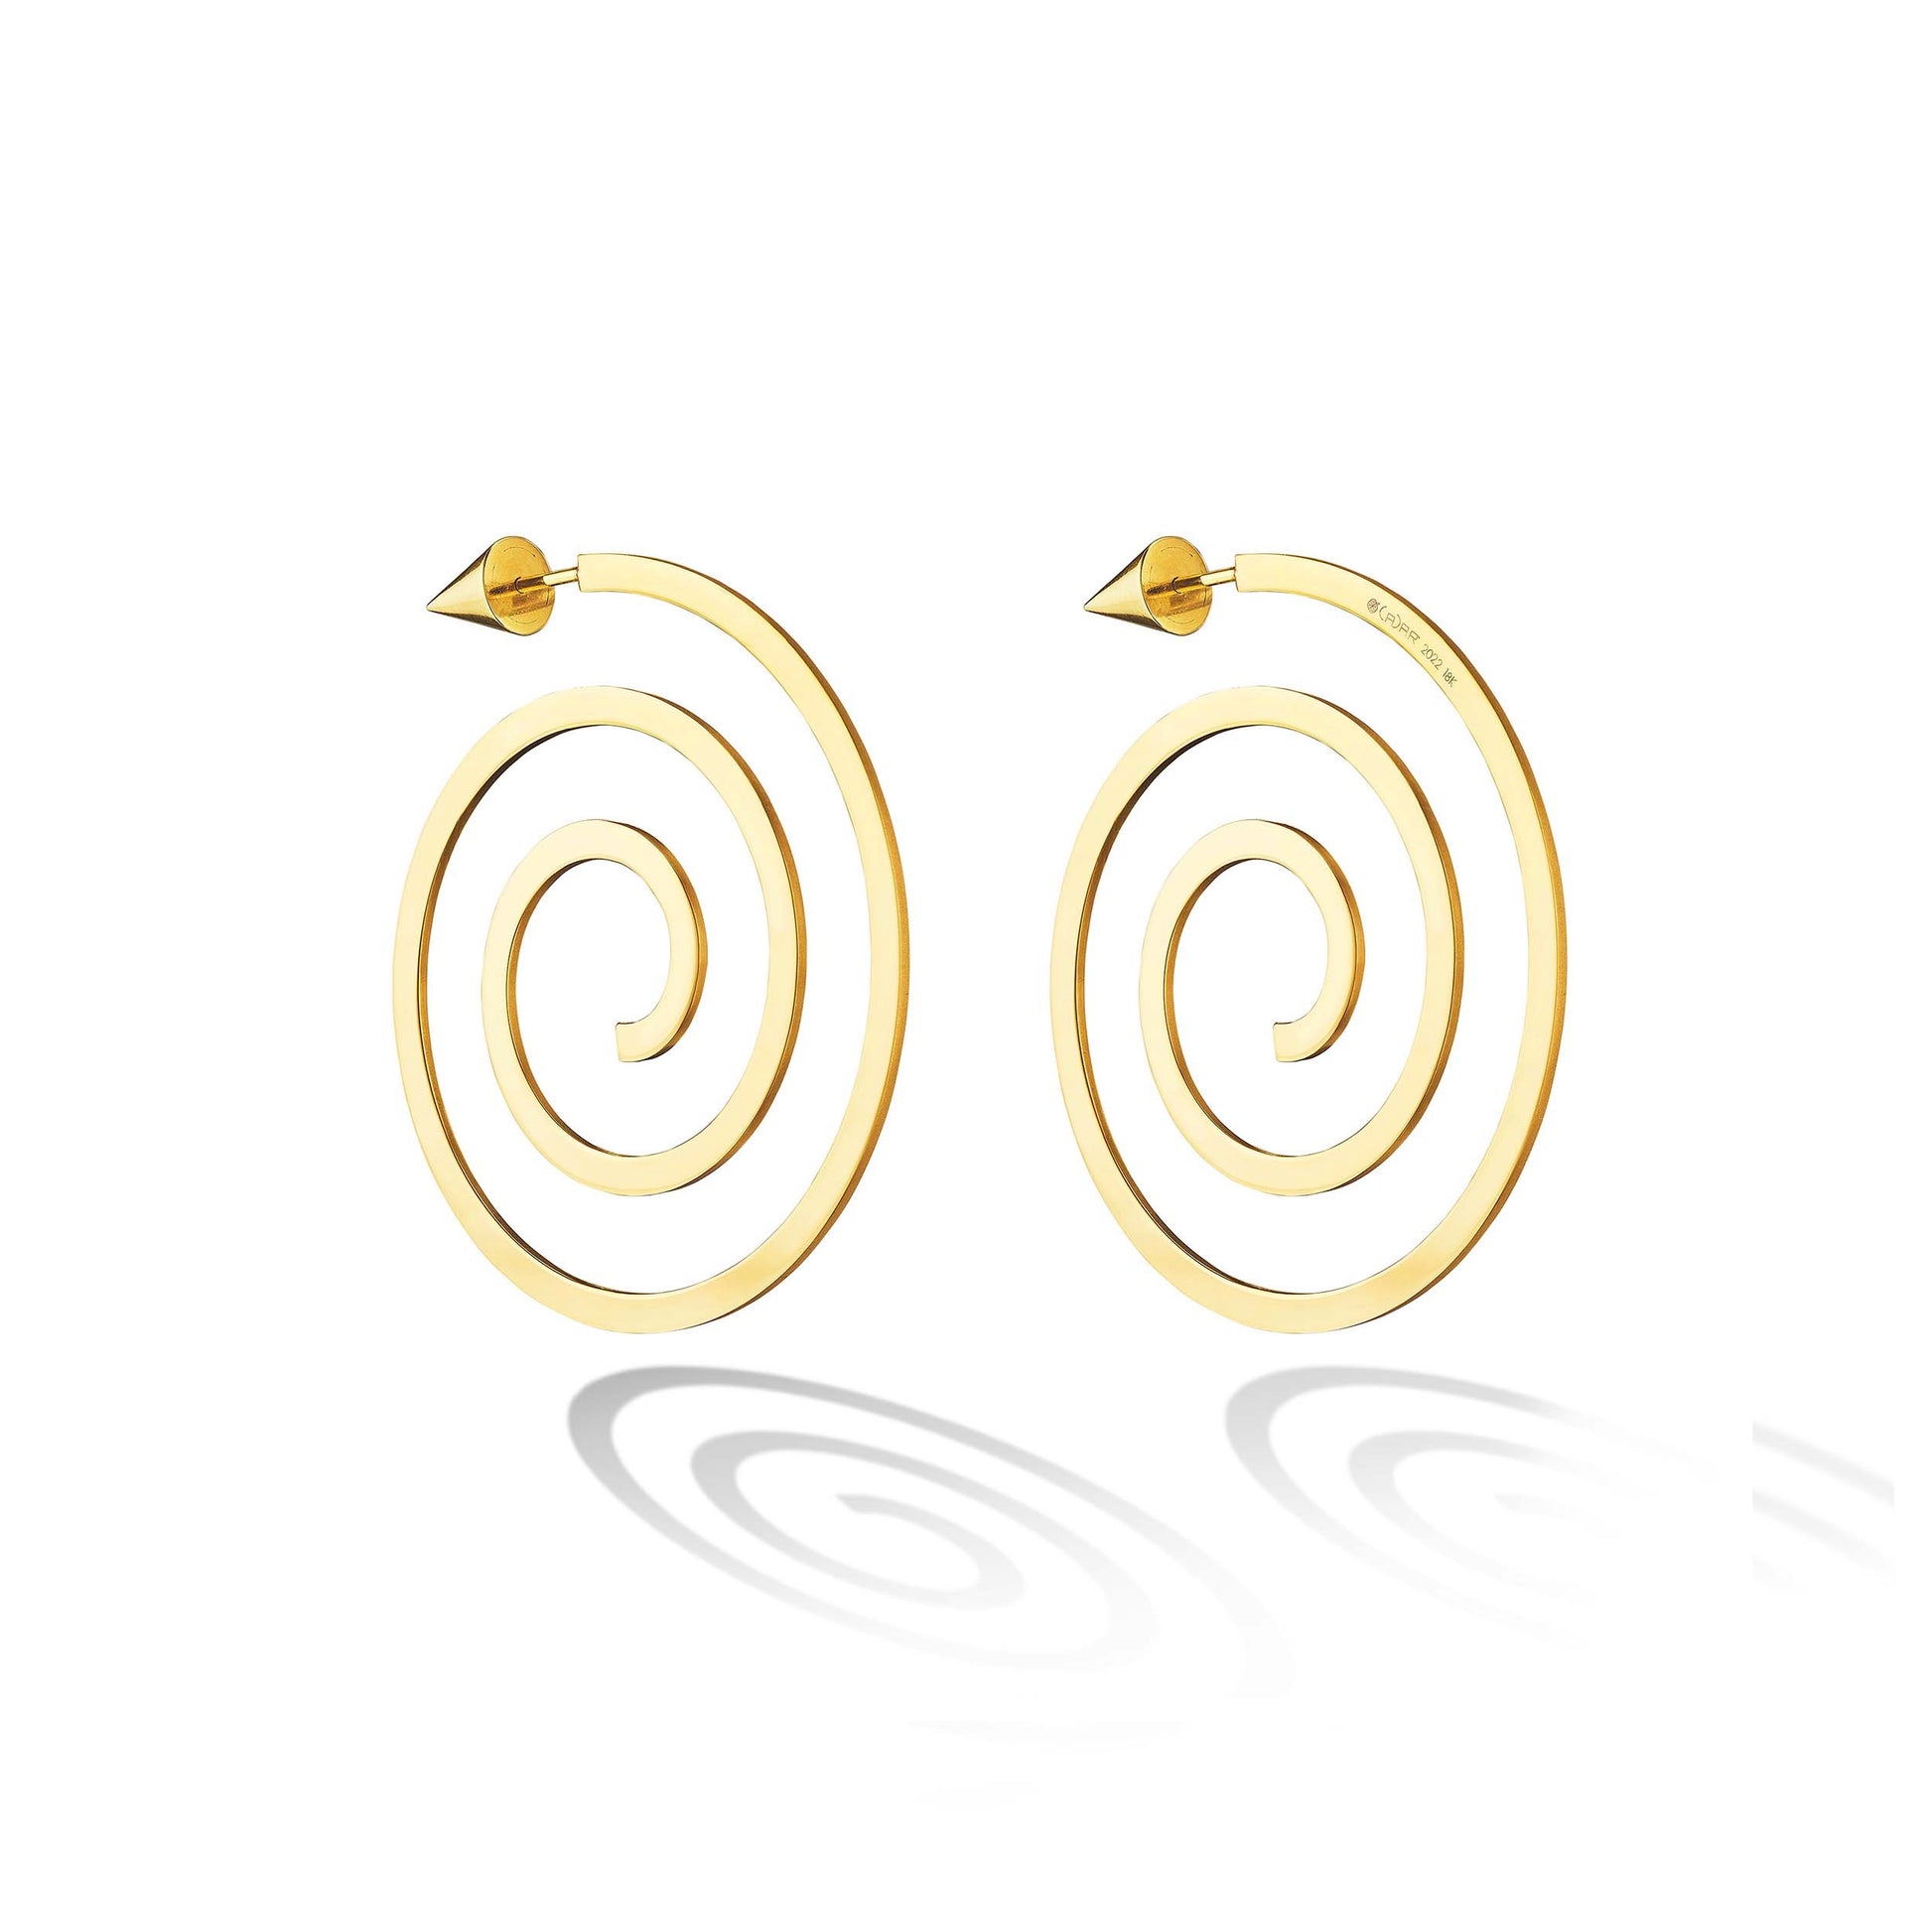 Spiral Hoop Earrings